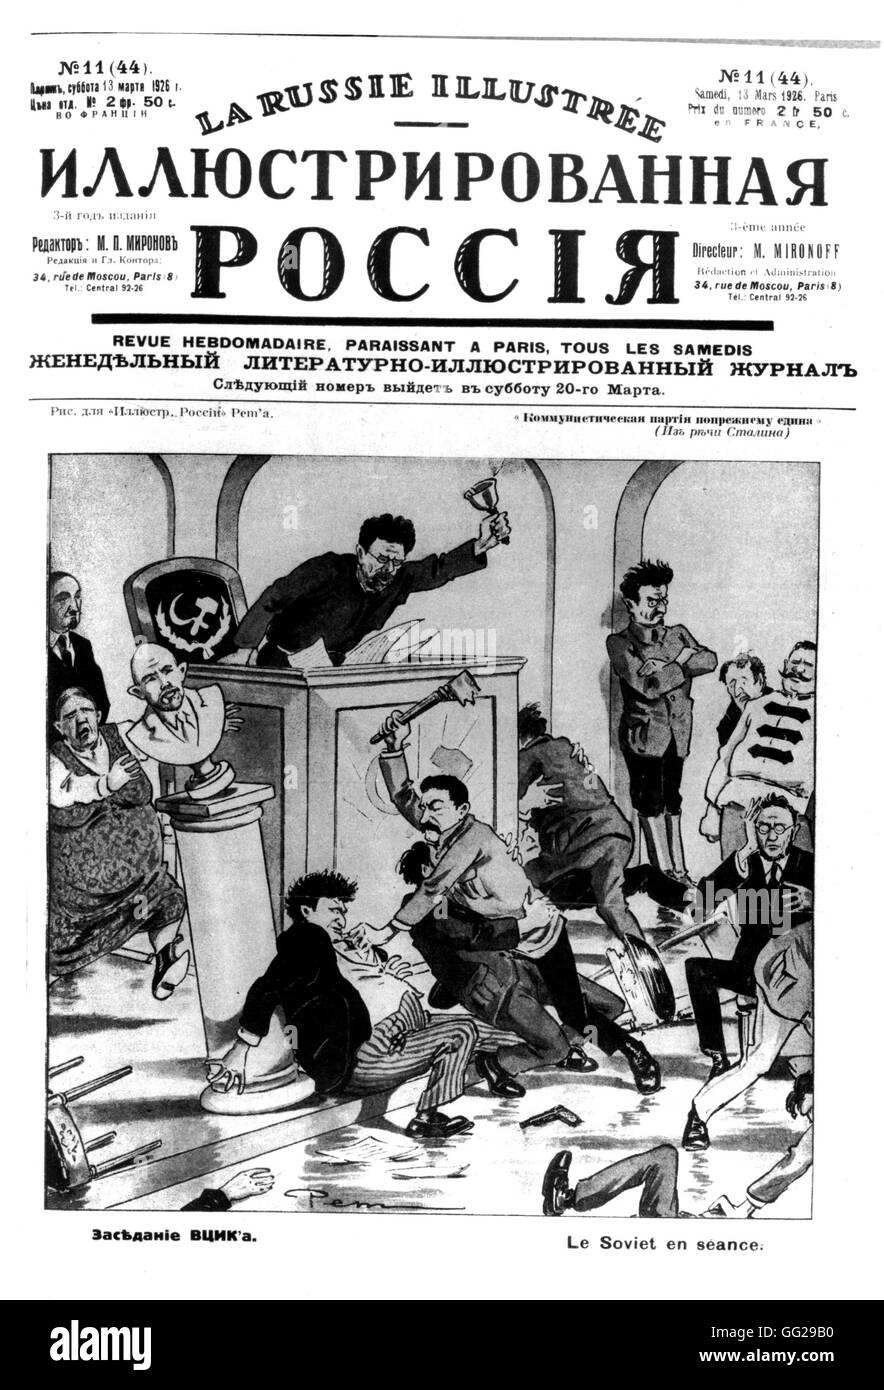 Vignetta satirica su una sessione sovietico. Trotsky, sul r., Kalinin nella galleria, Stalin battendo fino Kamenev. in "Russia illustrato', rivista pubblicata a Parigi. 1926 U.R.S.S. Foto Stock